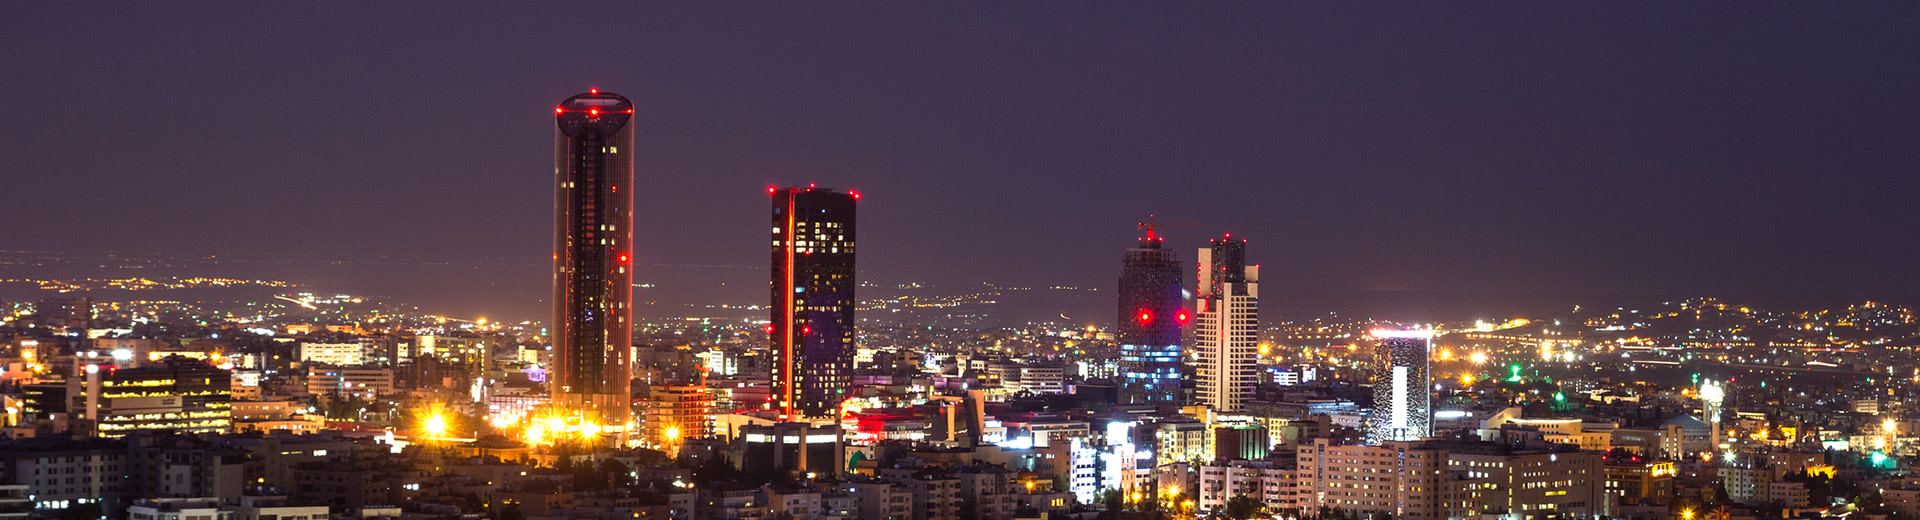 Una noche oscura en Amman mientras tres rascacielos iluminan el área circundante.